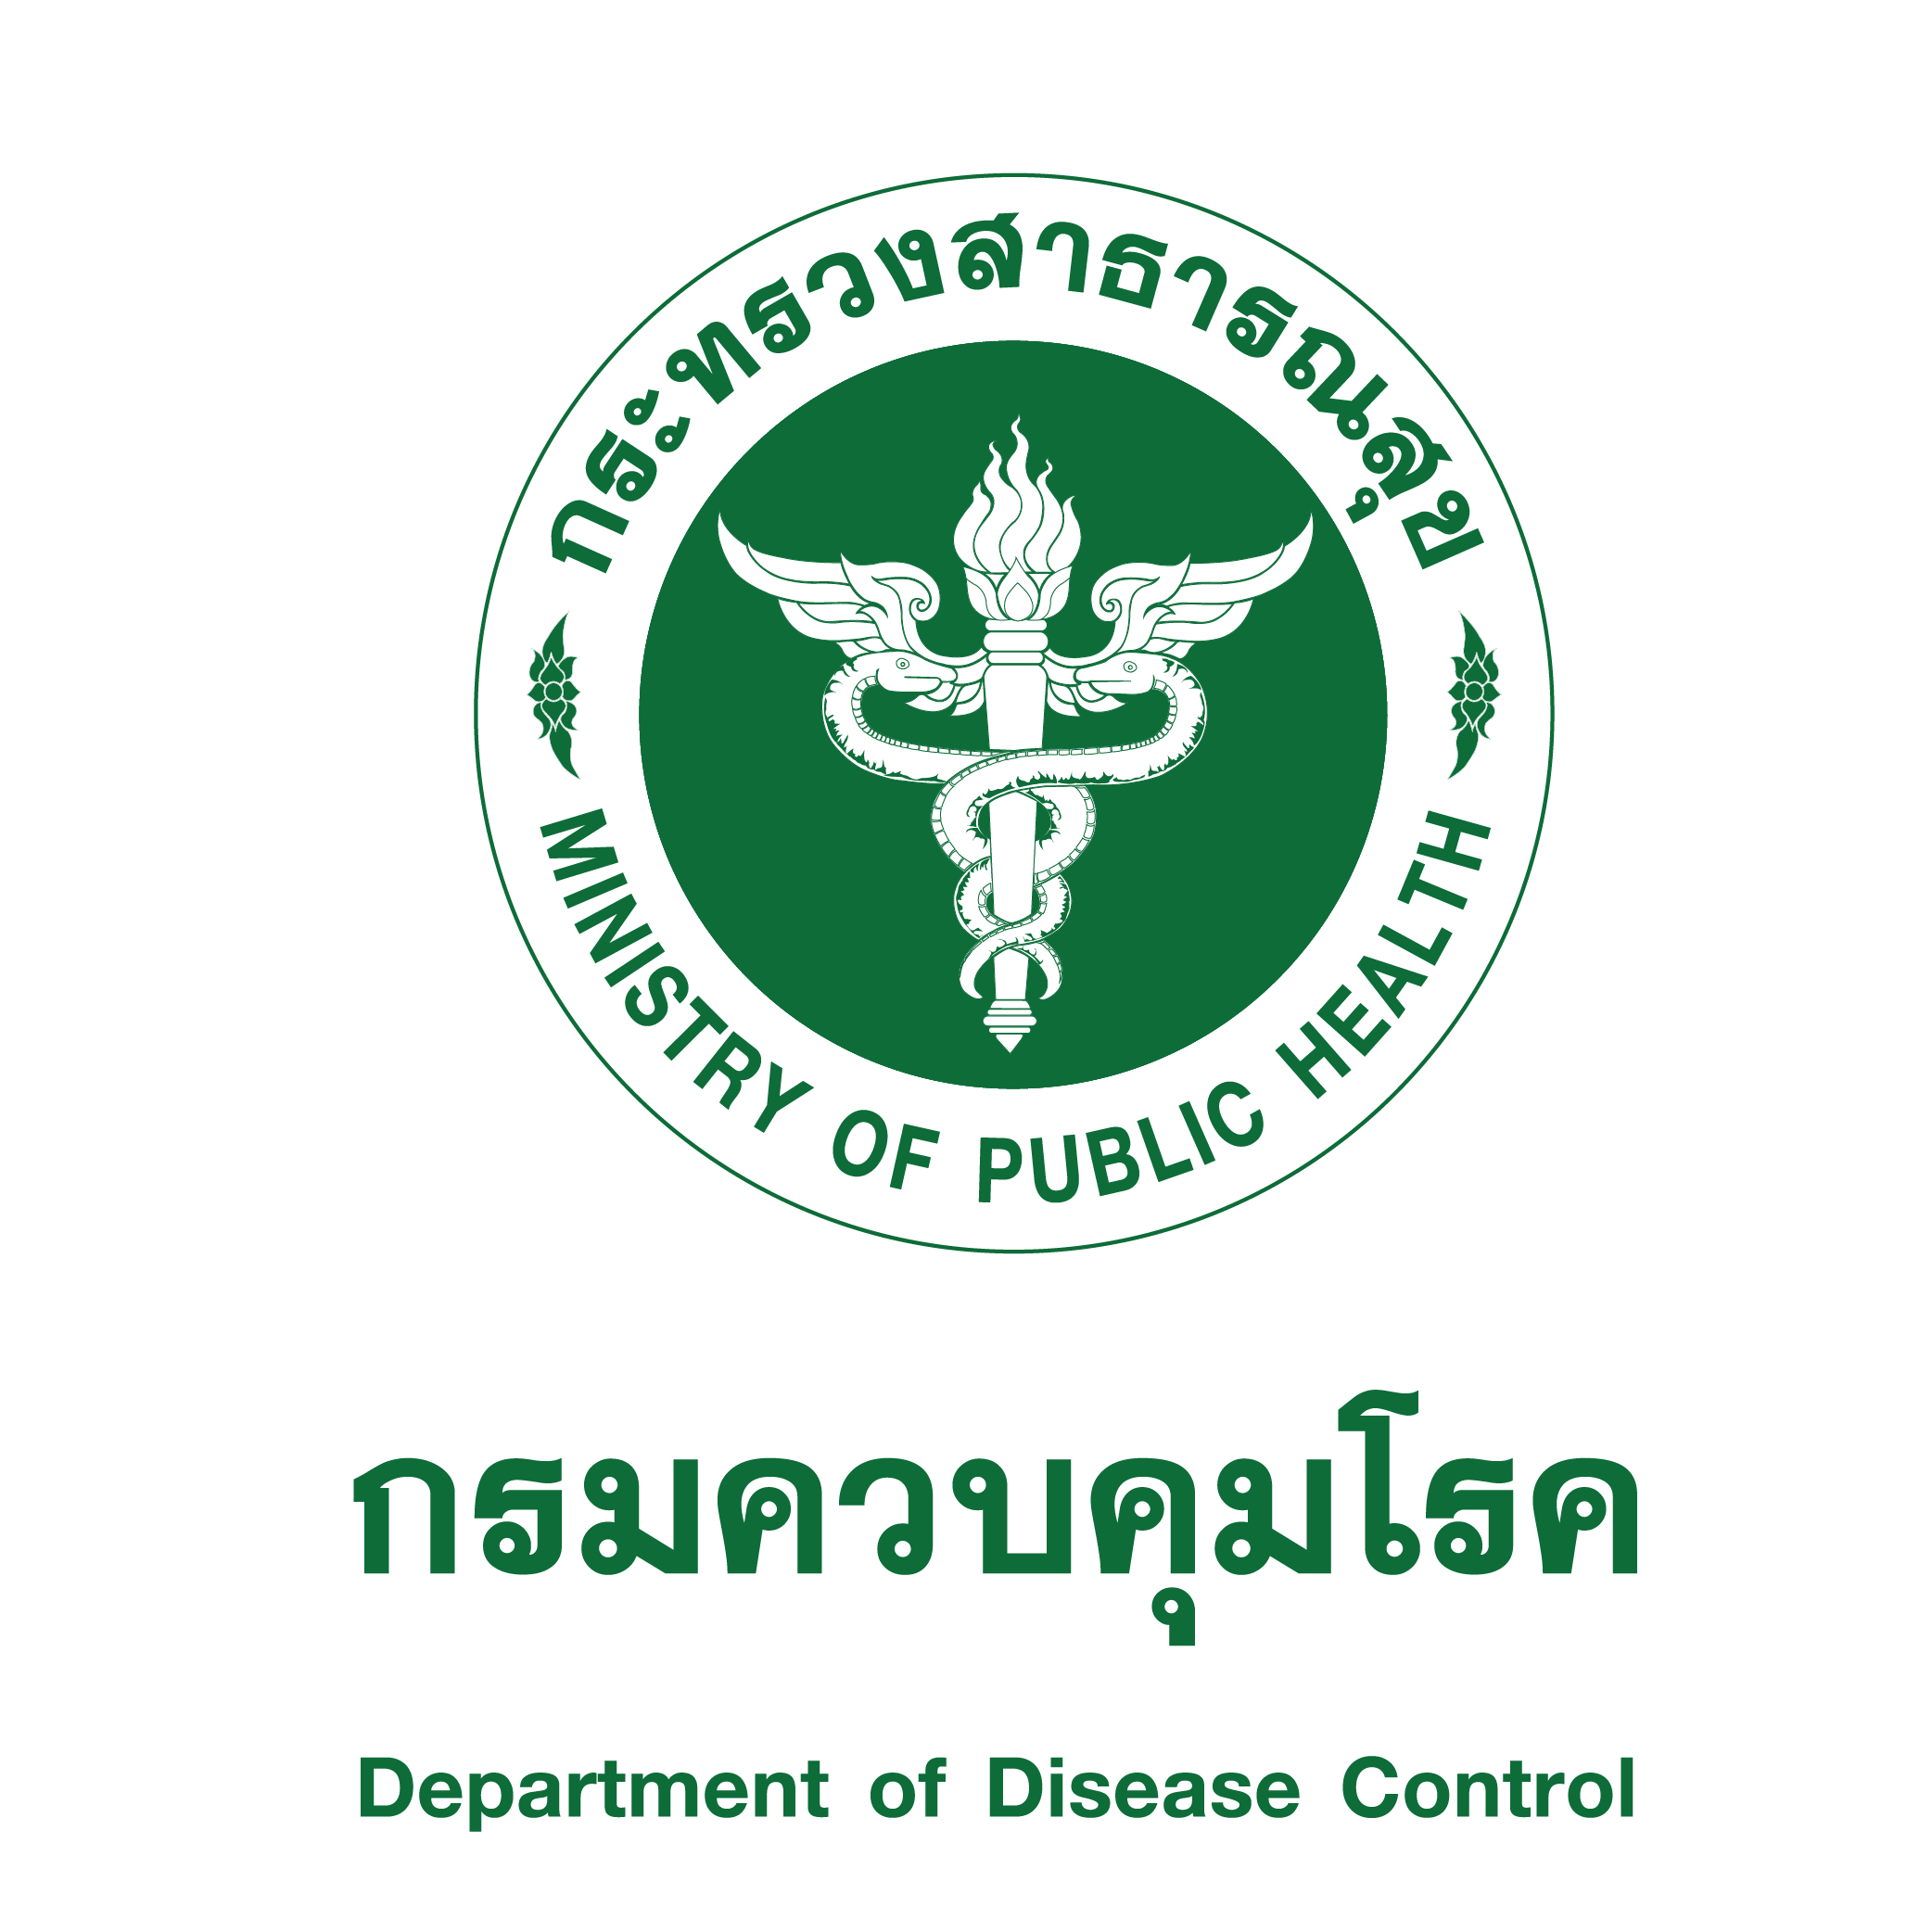 กลุ่มพัฒนาระบบบริหารองค์กรขอประชาสัมพันธ์ เข้าร่วมประชุมวิชาการประจำปีการแพทย์แผนไทย และการแพทย์ทางเลือกแห่งชาติ ครั้งที่ 20